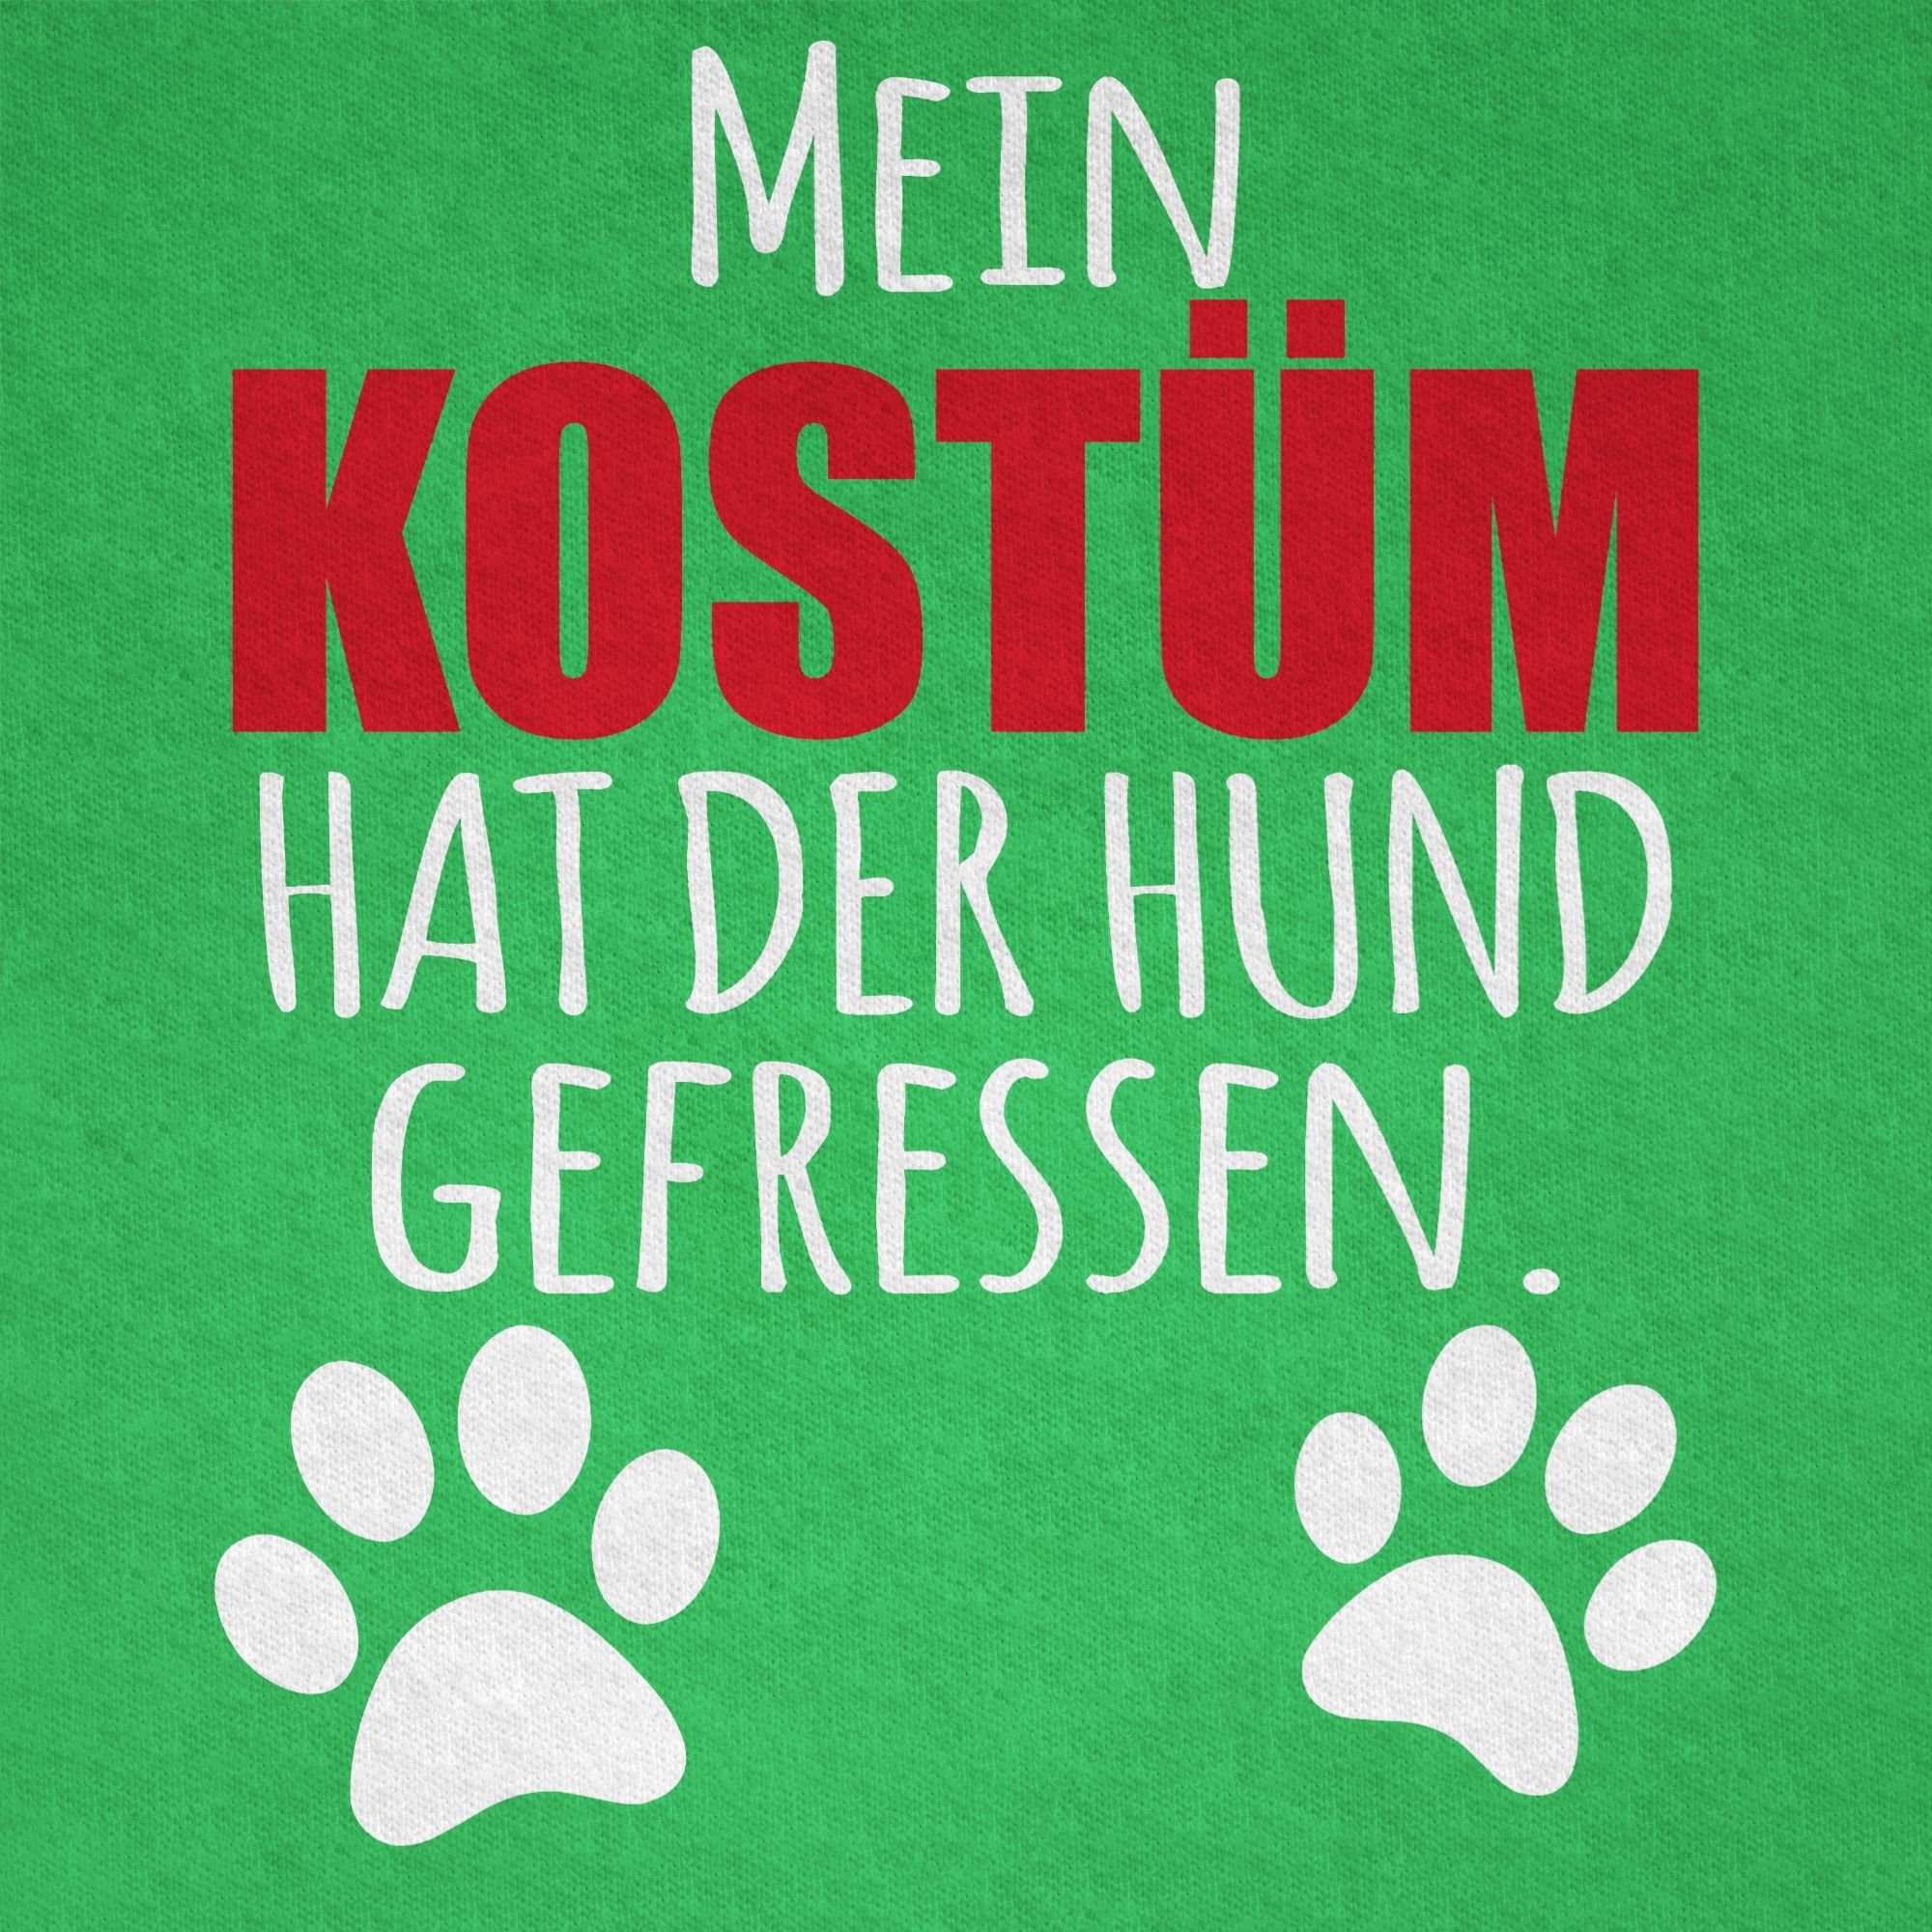 Mein gefressen Hundekostüm Hund Faschingskostüme Dog Shirtracer T-Shirt Kostüm 2 - Fasching der Grün Karneval hat &